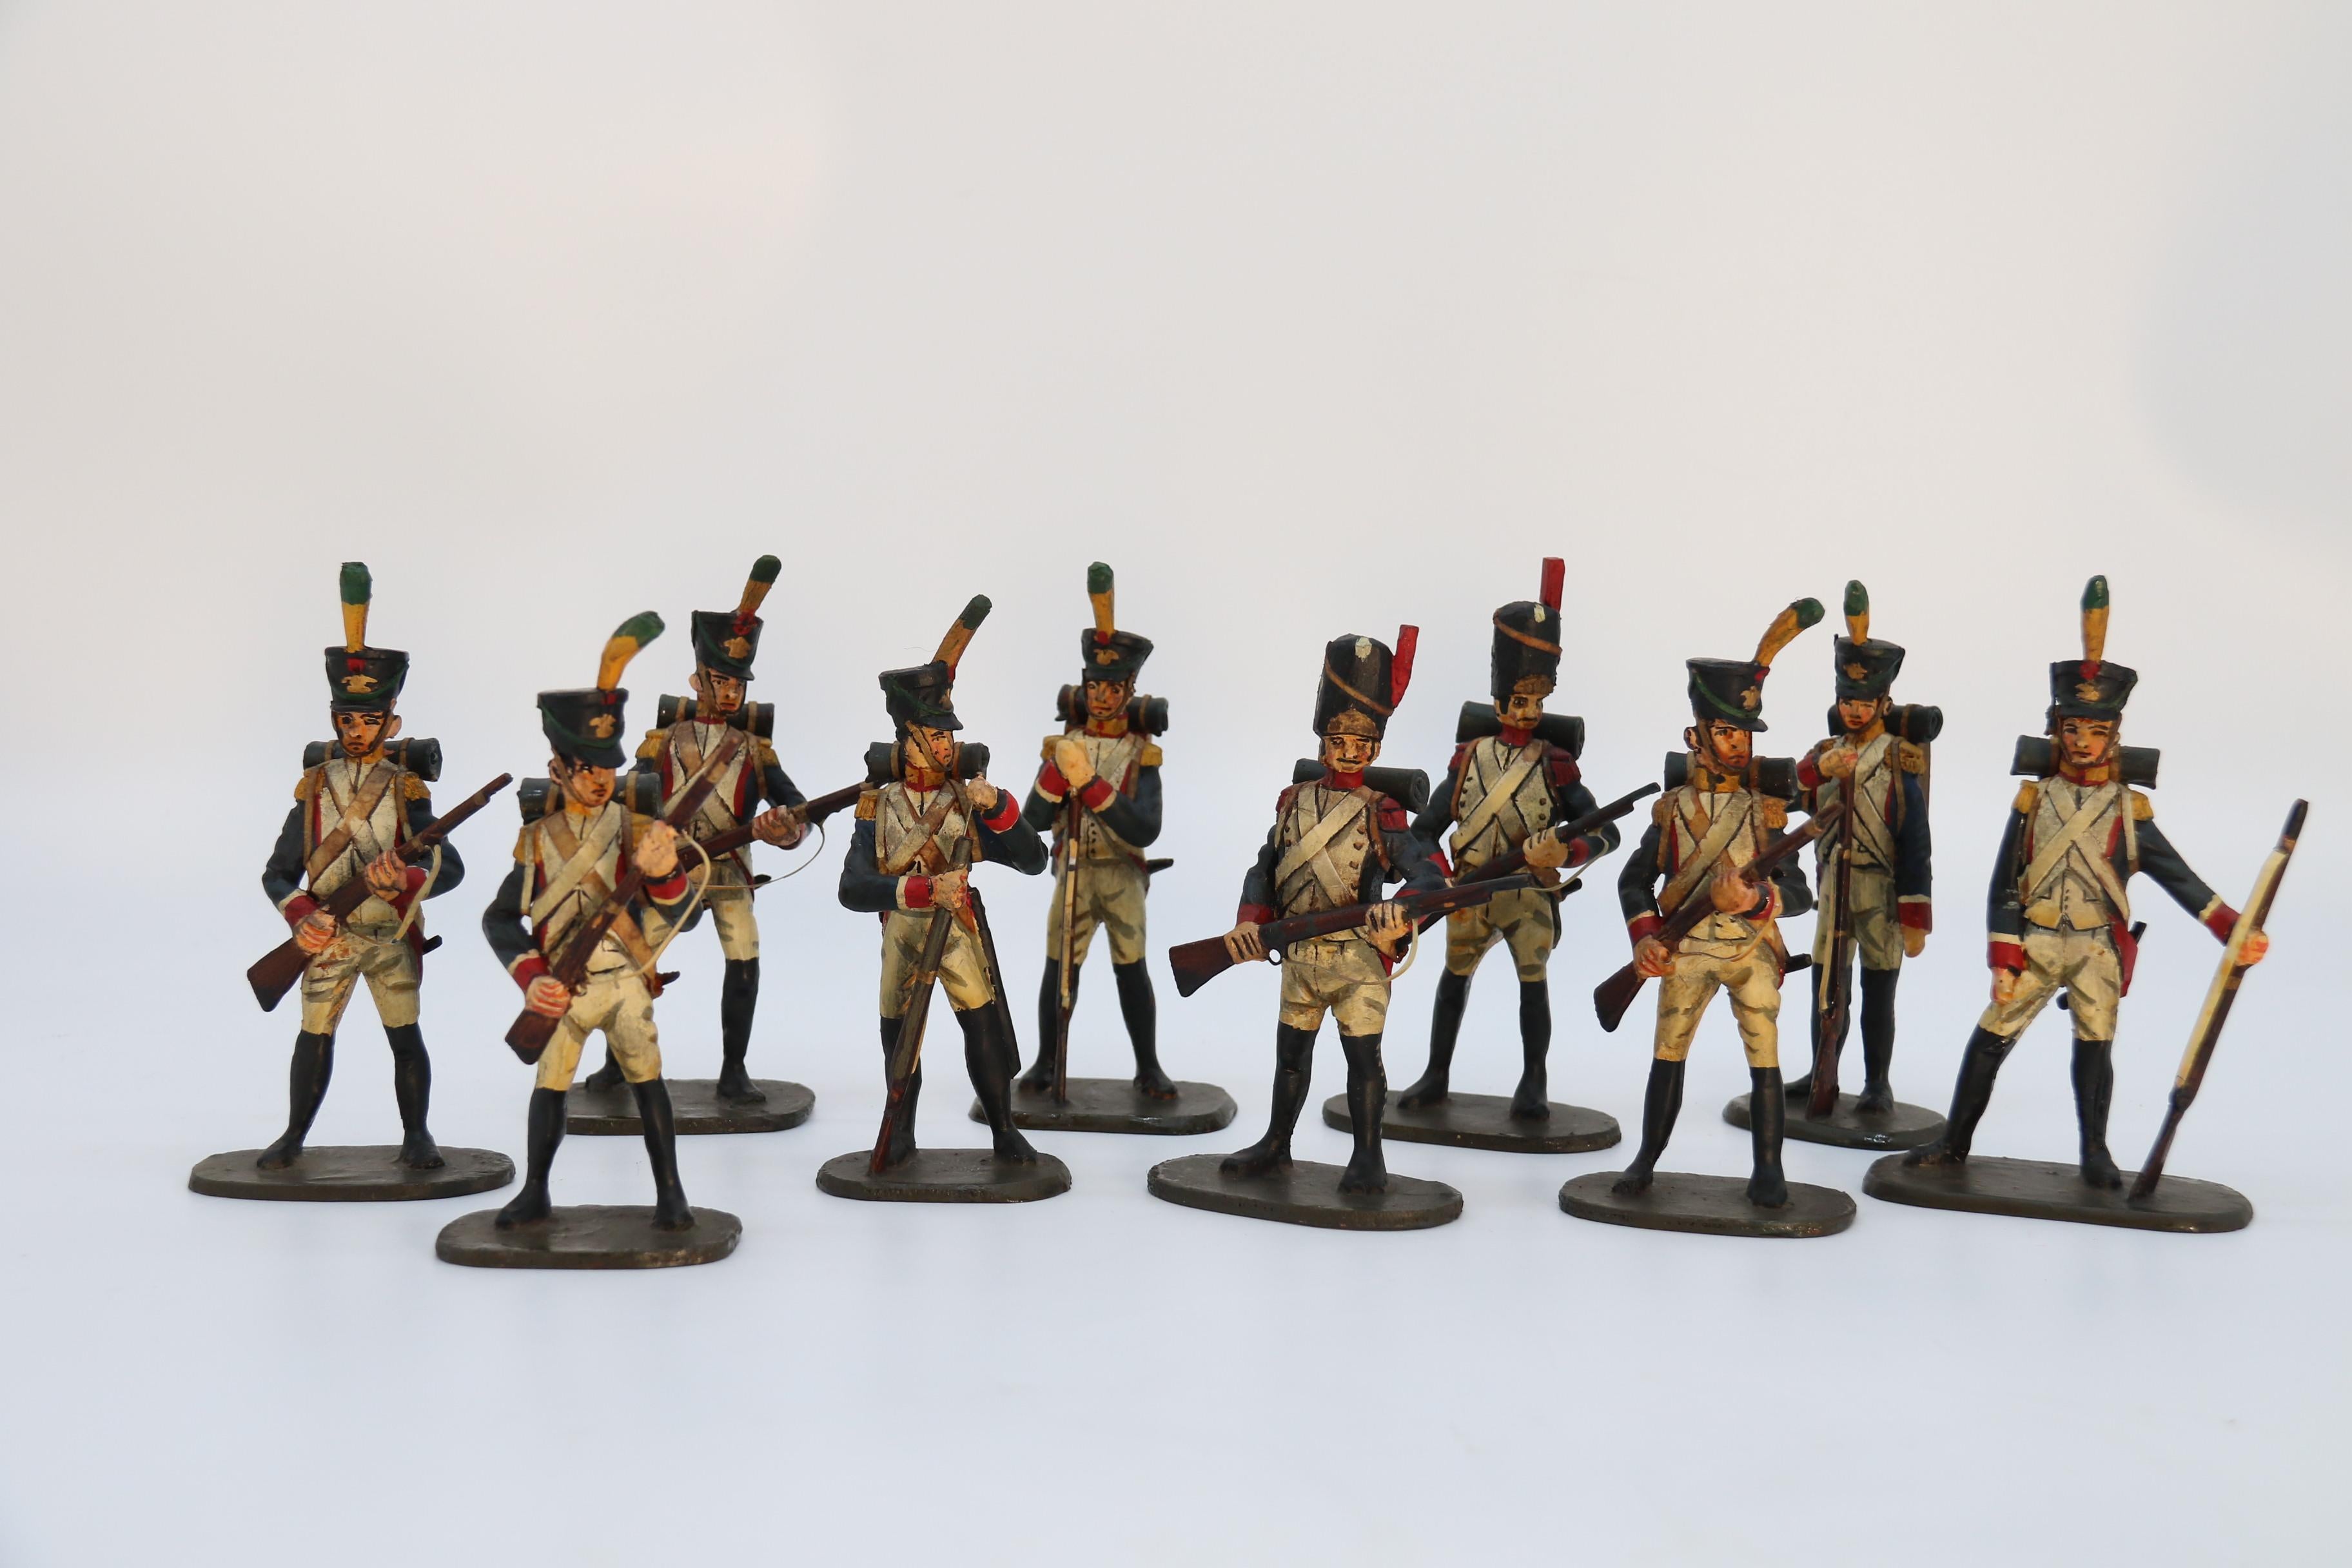 Diese sehr seltene Gruppe französischer Soldaten aus der napoleonischen Zeit ist komplett handgefertigt. Sie wurden alle fein in Holz geschnitzt und dann mit viel Liebe zum Detail handbemalt. Jeder Soldat ist in einer anderen Position dargestellt